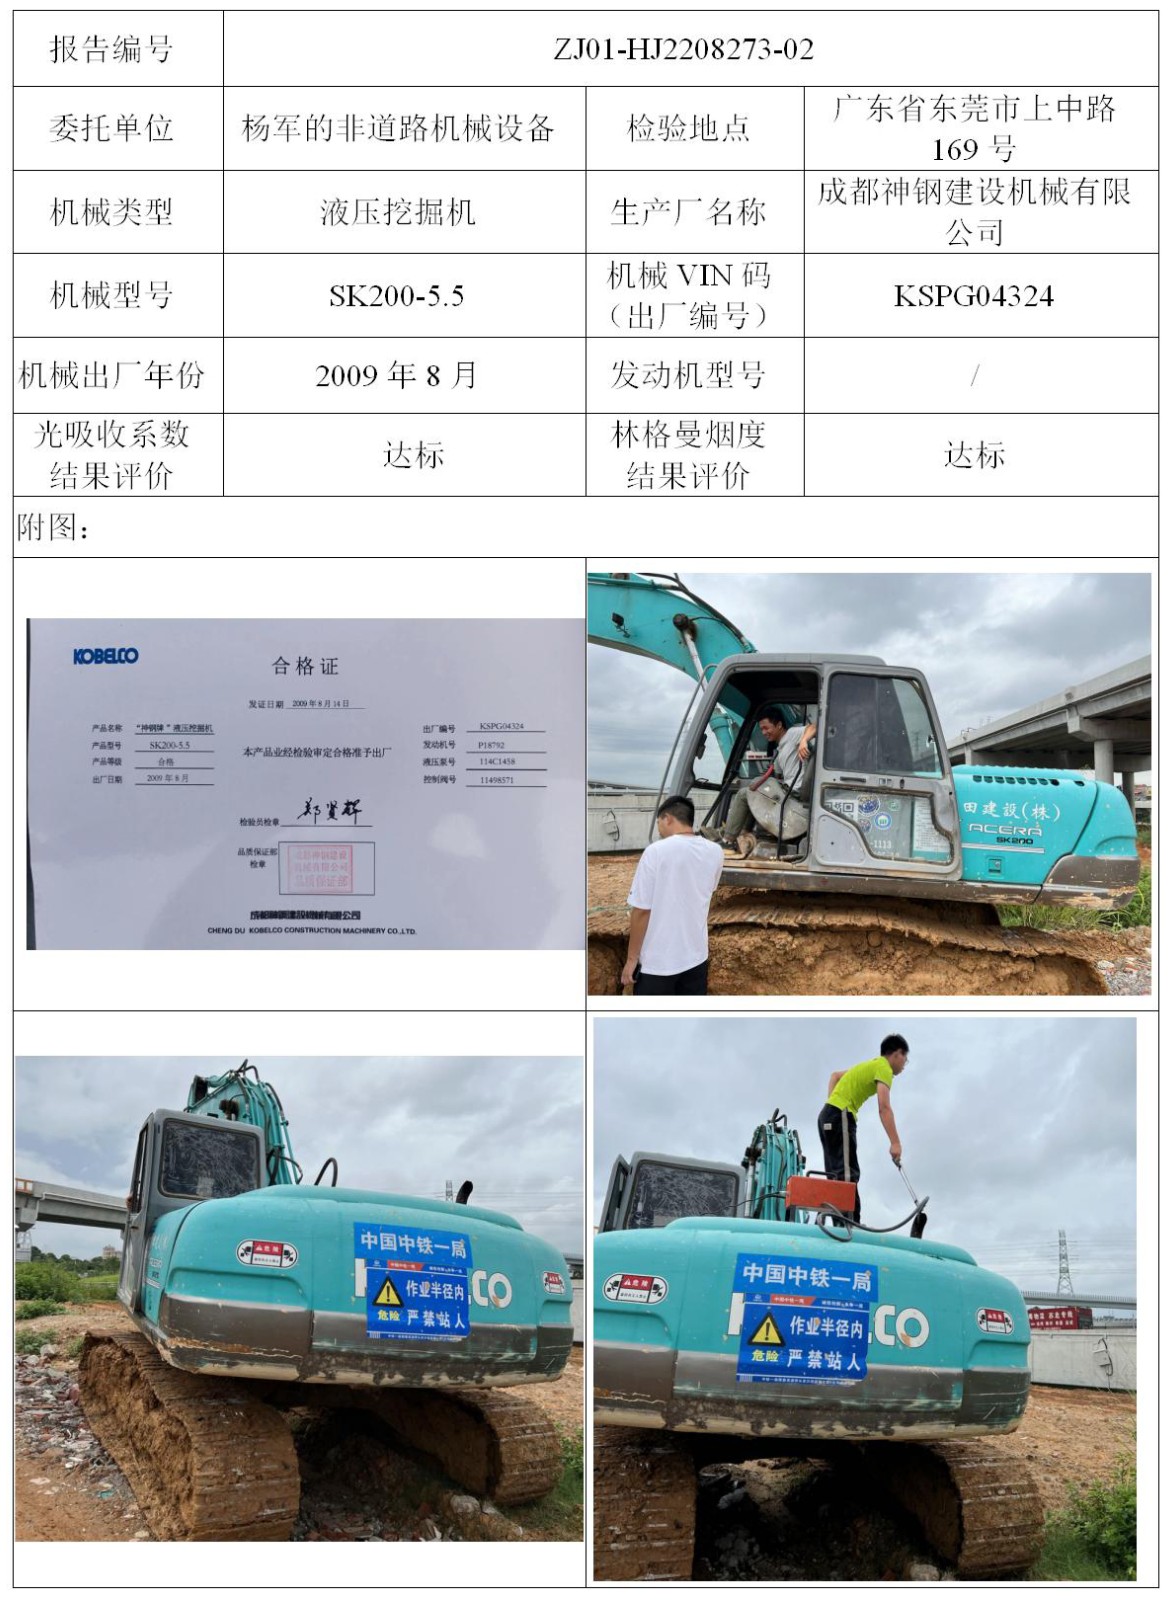 委托-ZJ01-HJ2208273-02杨军的非道路机械设备（叉车废气）二维码-江静汶_01.jpg